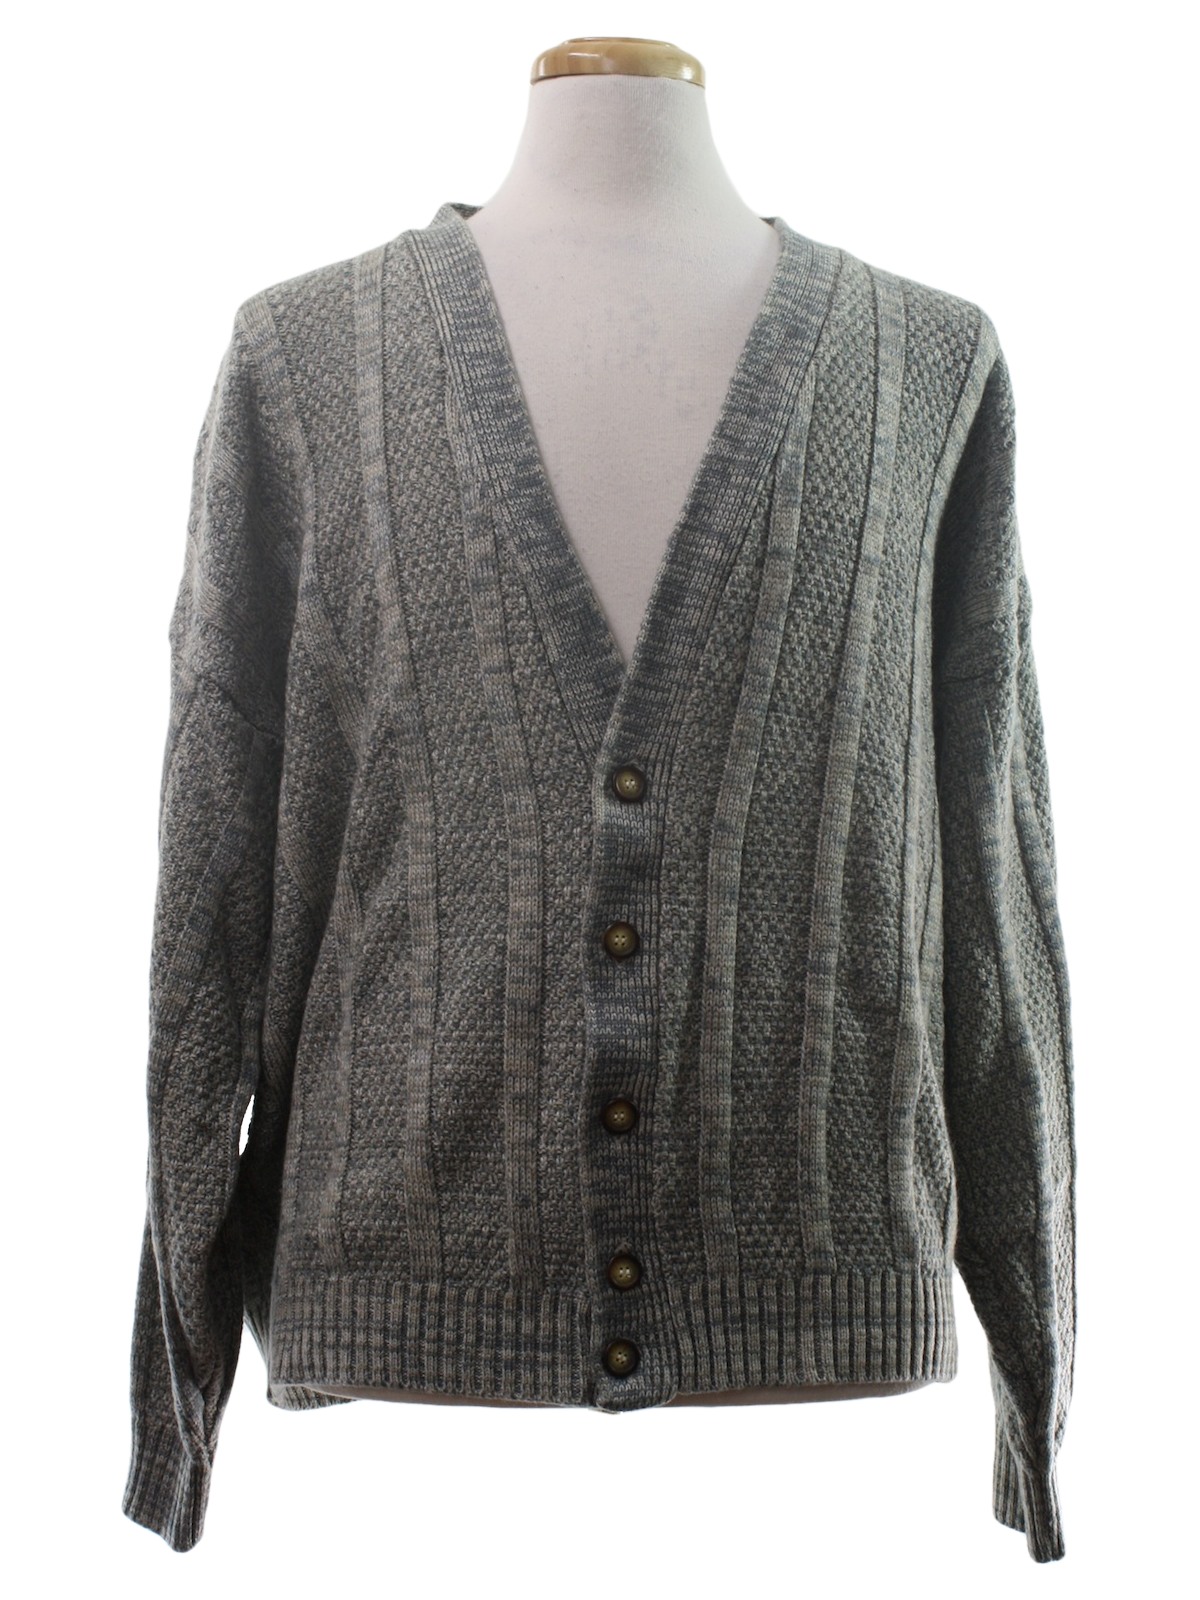 Retro 1980's Caridgan Sweater (Unreadable Label) : 80s -Unreadable ...